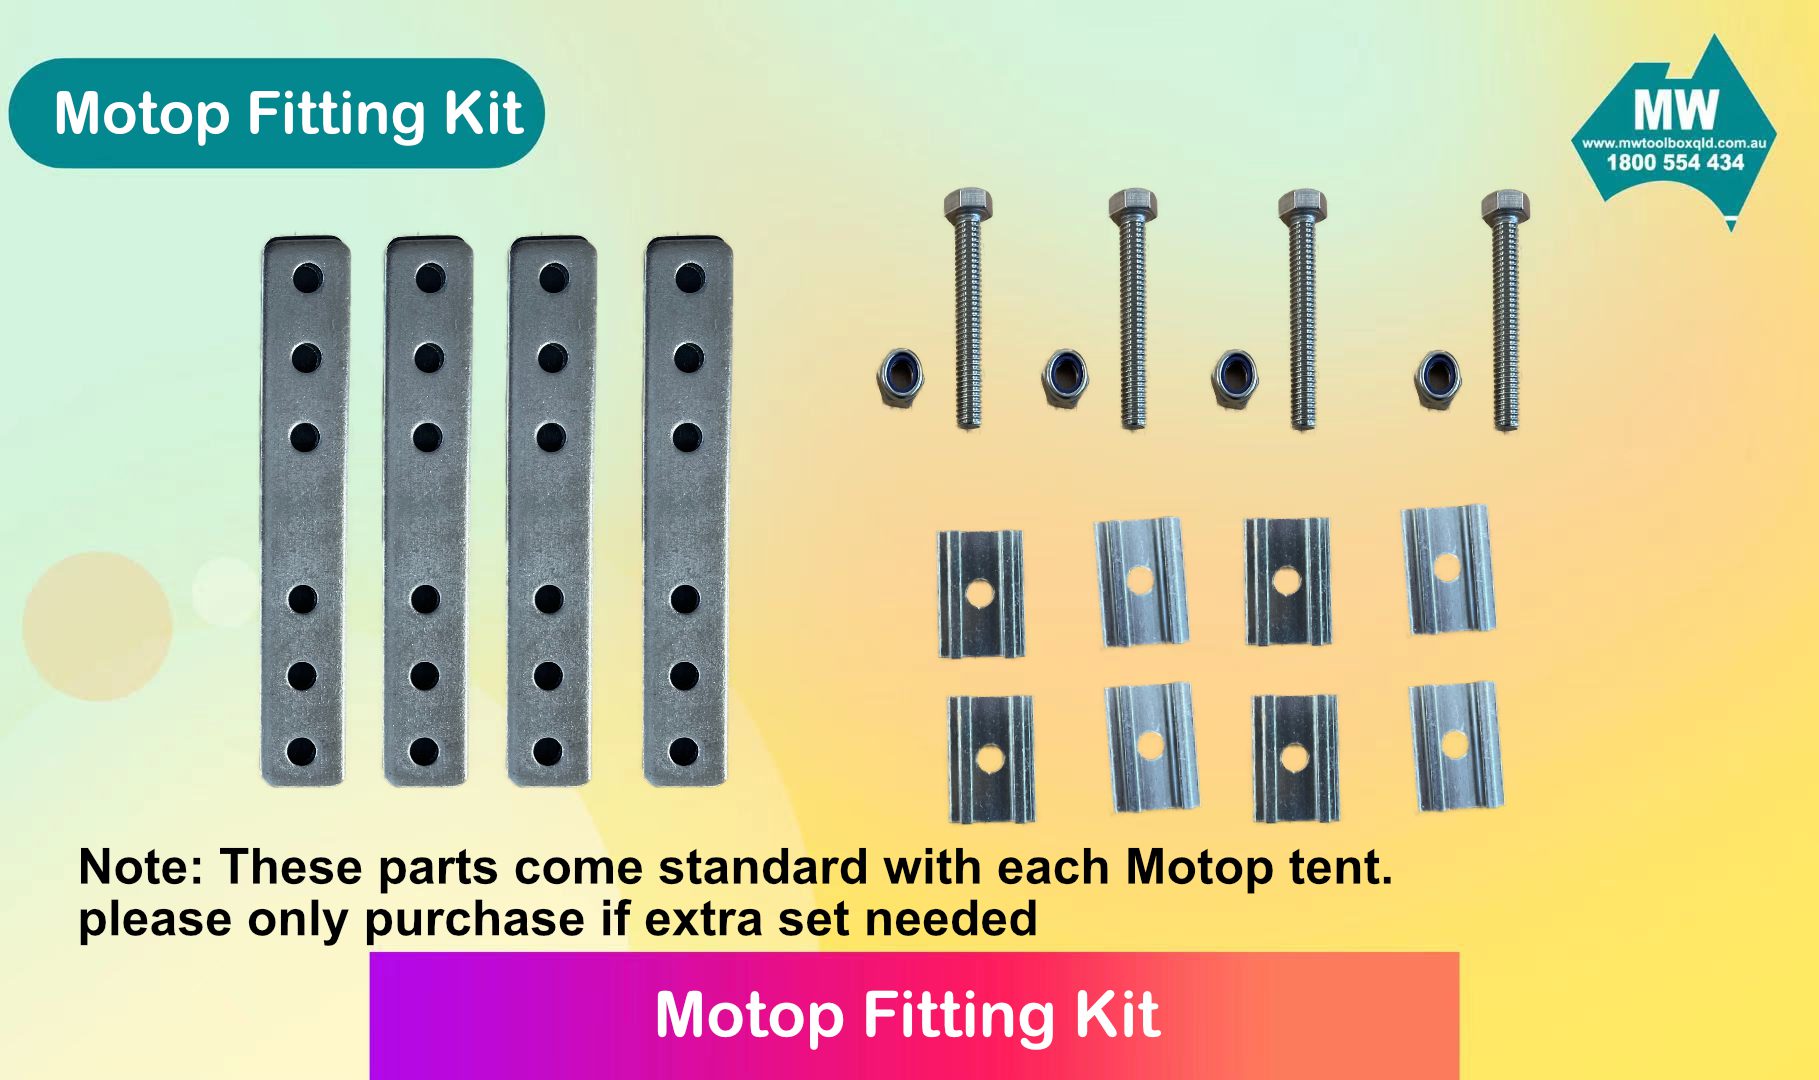 Motop fitting kit